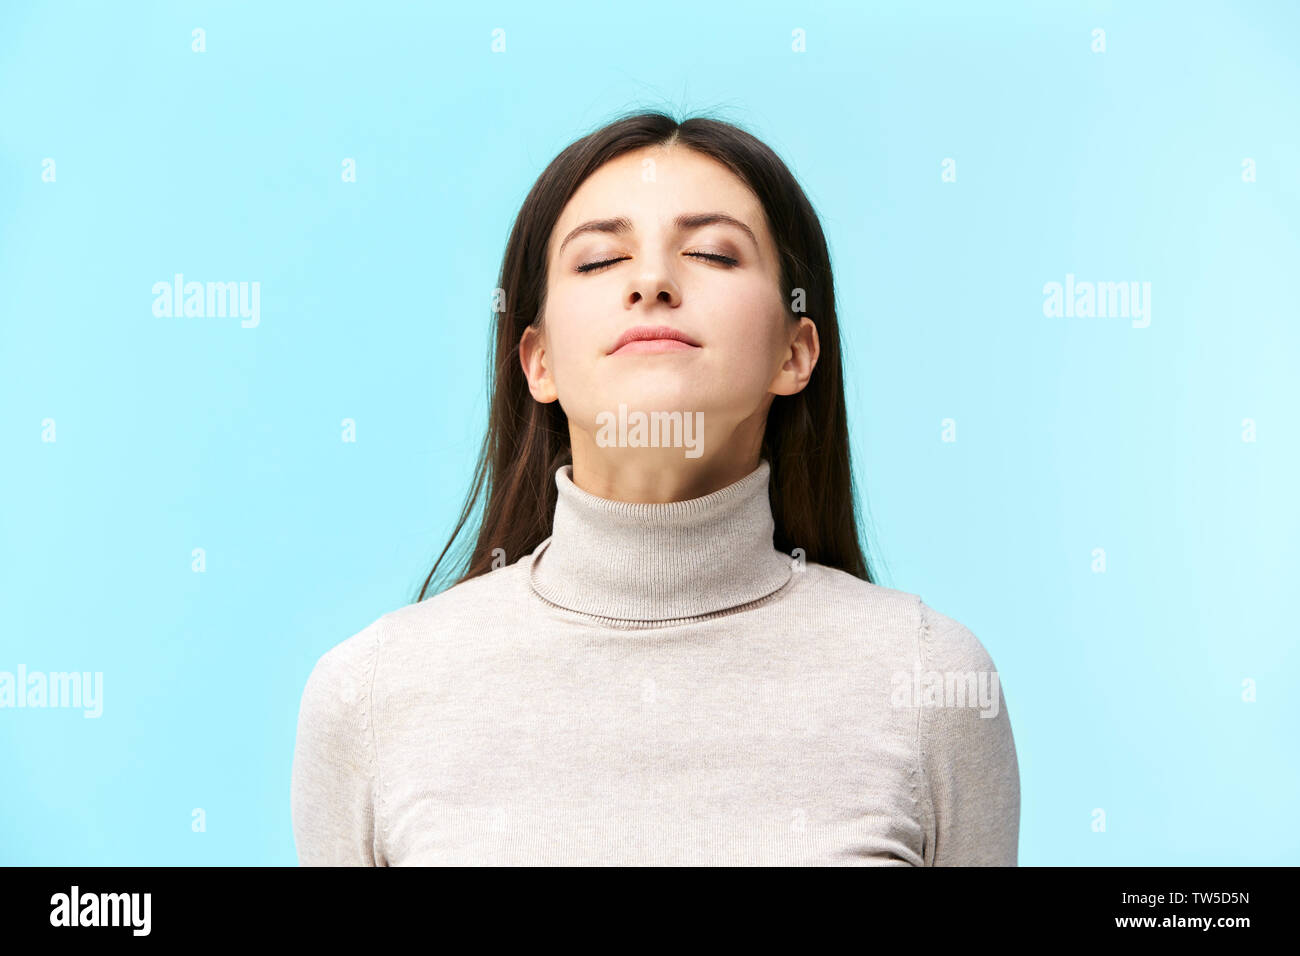 Ritratto di una giovane e bella donna caucasica a occhi chiusi, odorando la fragranza nell'aria, isolato su sfondo blu Foto Stock